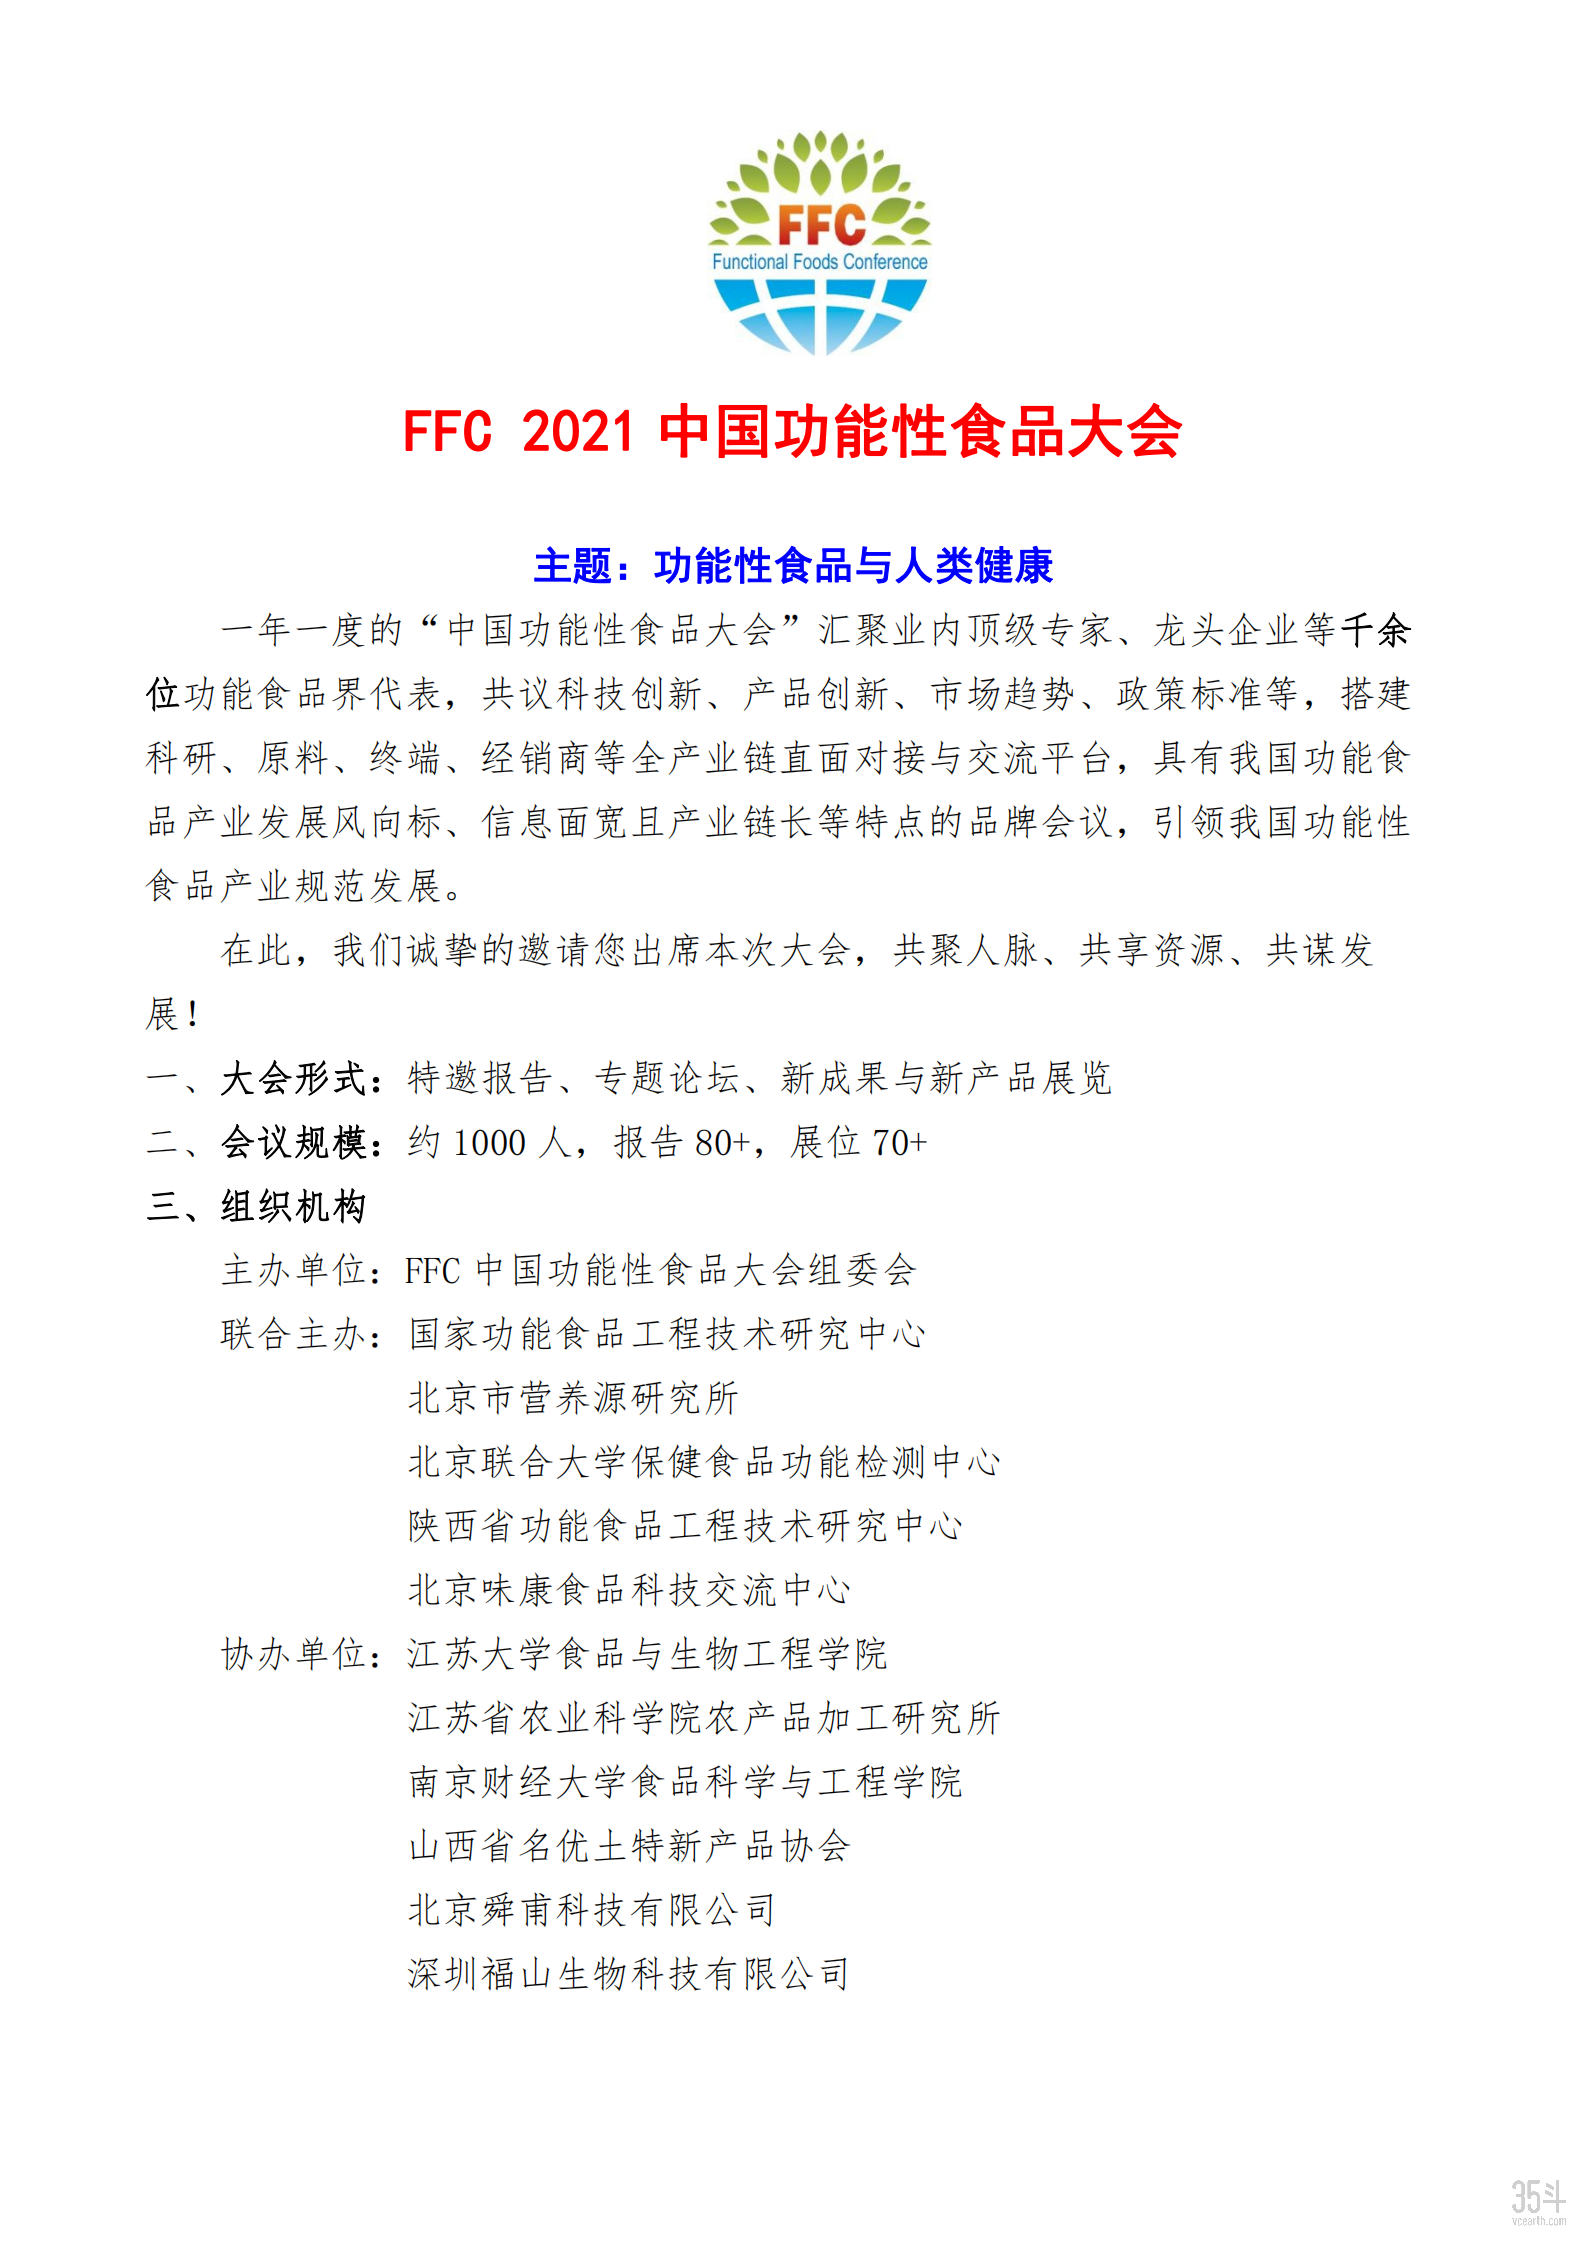 FFC2021中国功能性食品大会_00.png